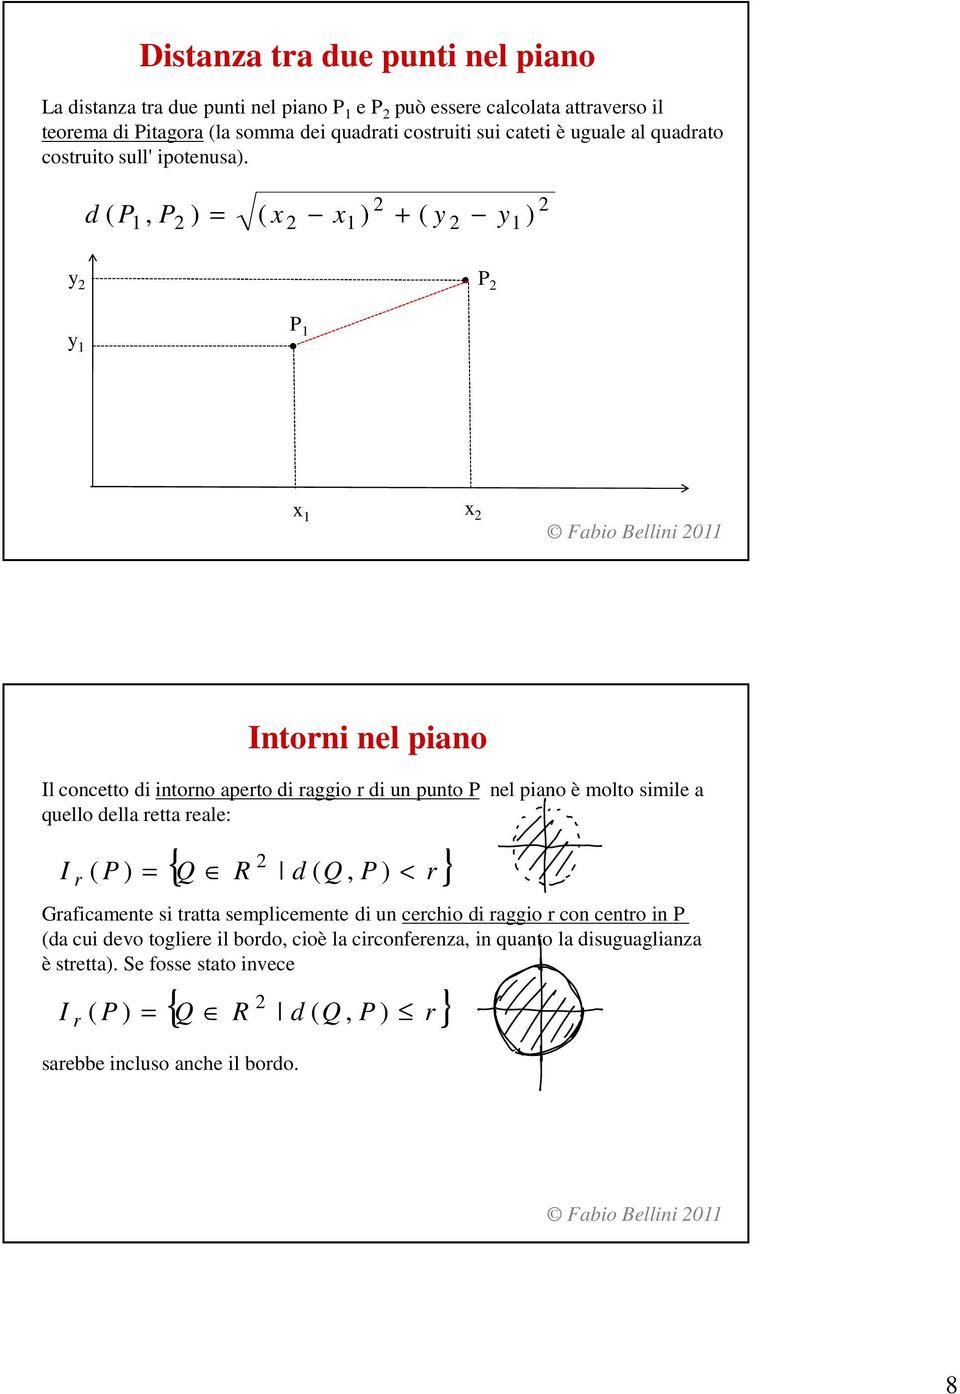 1, P ) ( 1 ) + ( 1 ) d ( P P 1 P 1 1 Intorni nel piano Il concetto di intorno aperto di raggio r di un punto P nel piano è molto simile a quello della retta reale: { Q